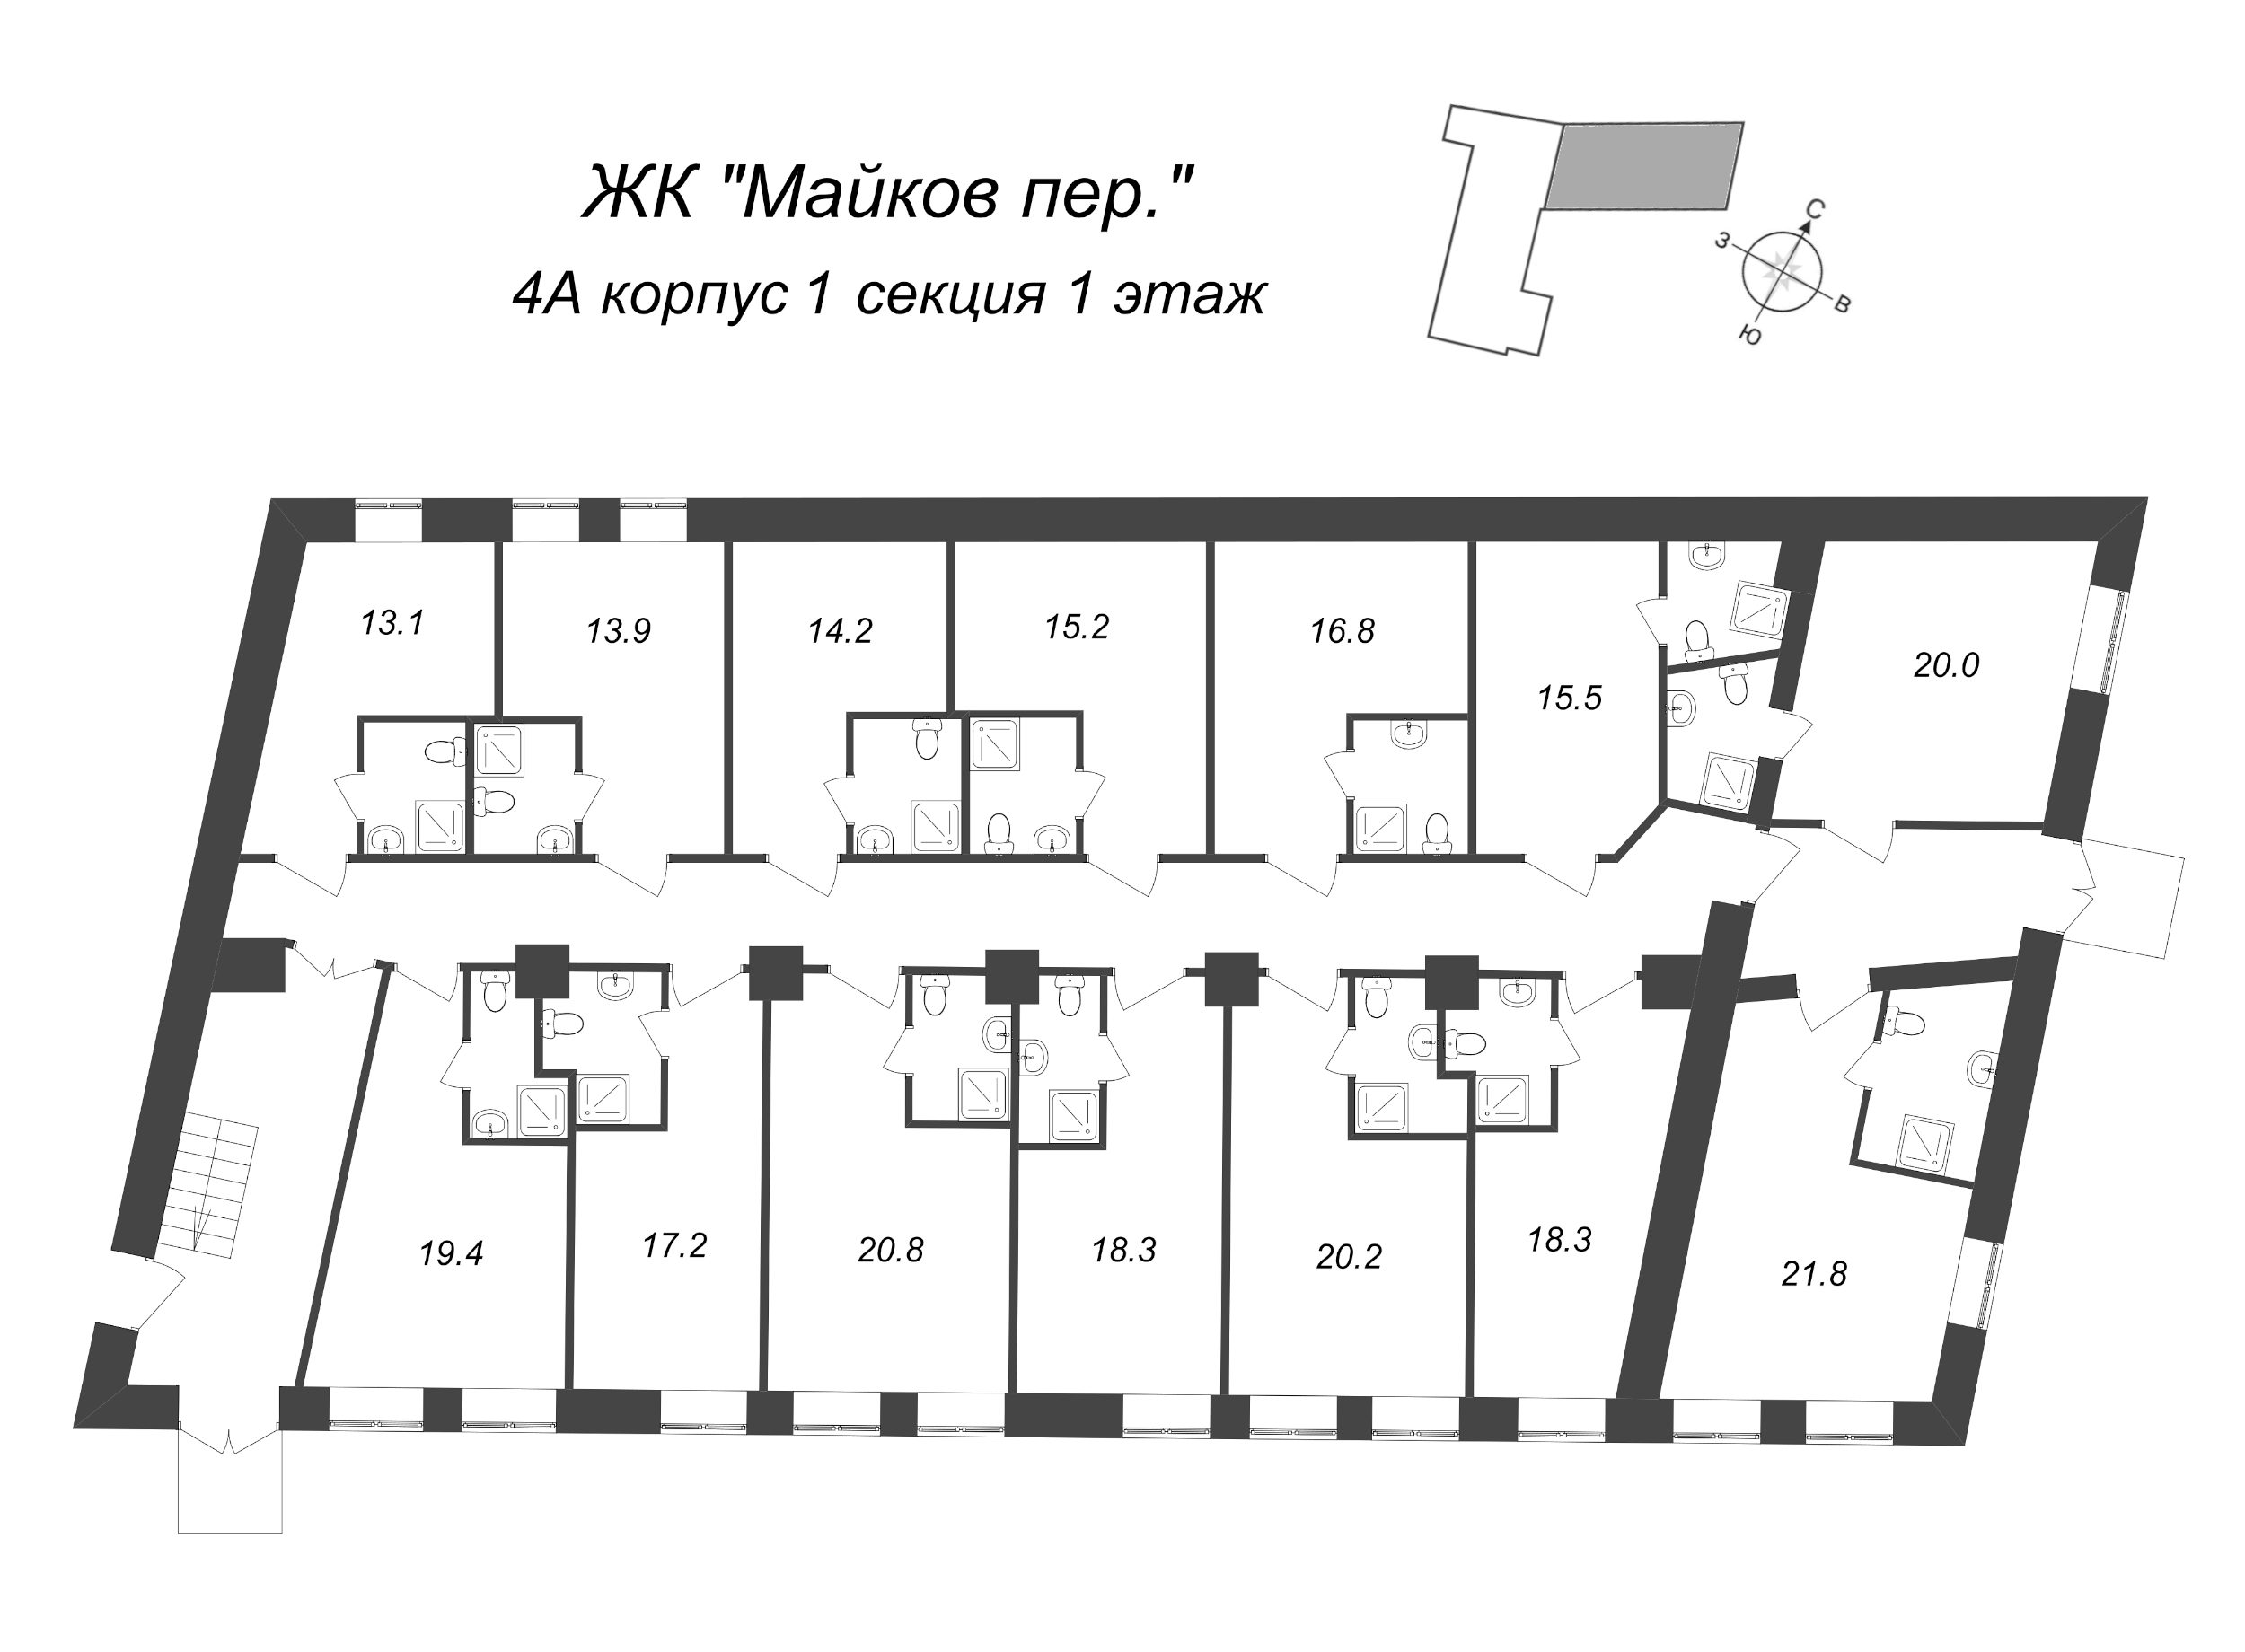 Квартира-студия, 18.3 м² в ЖК "Майков пер., 4А" - планировка этажа